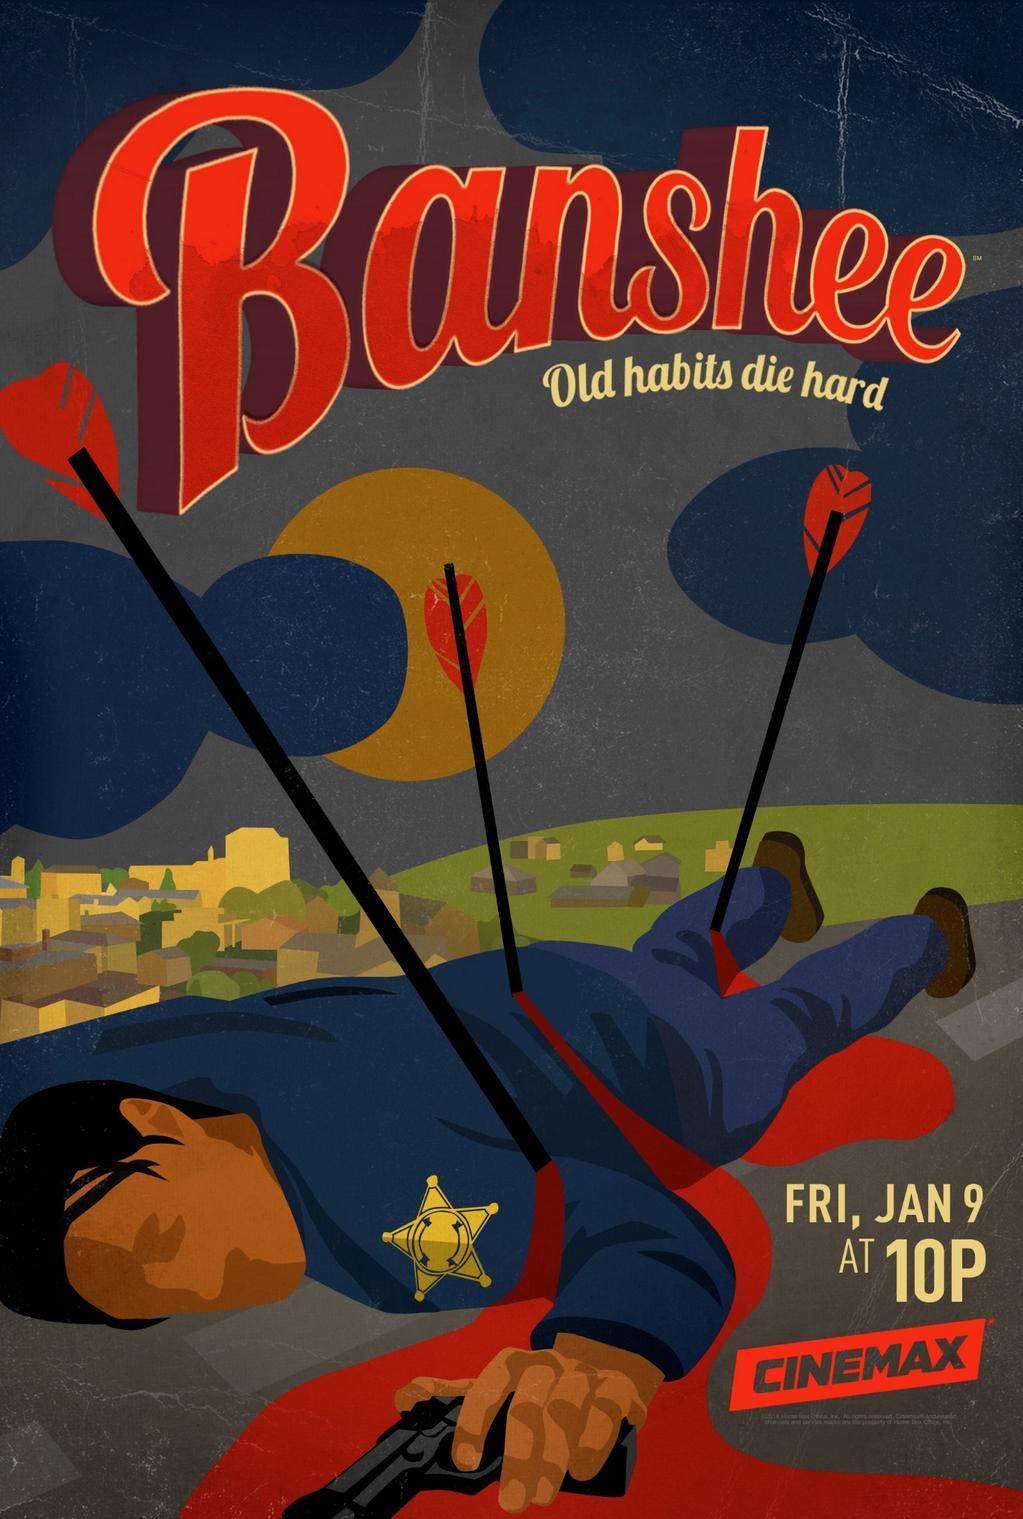 Poster de la saison 3 de la série Banshee créée par David Schickler et Jonathan Tropper avec la tagline "Old habits die hard"